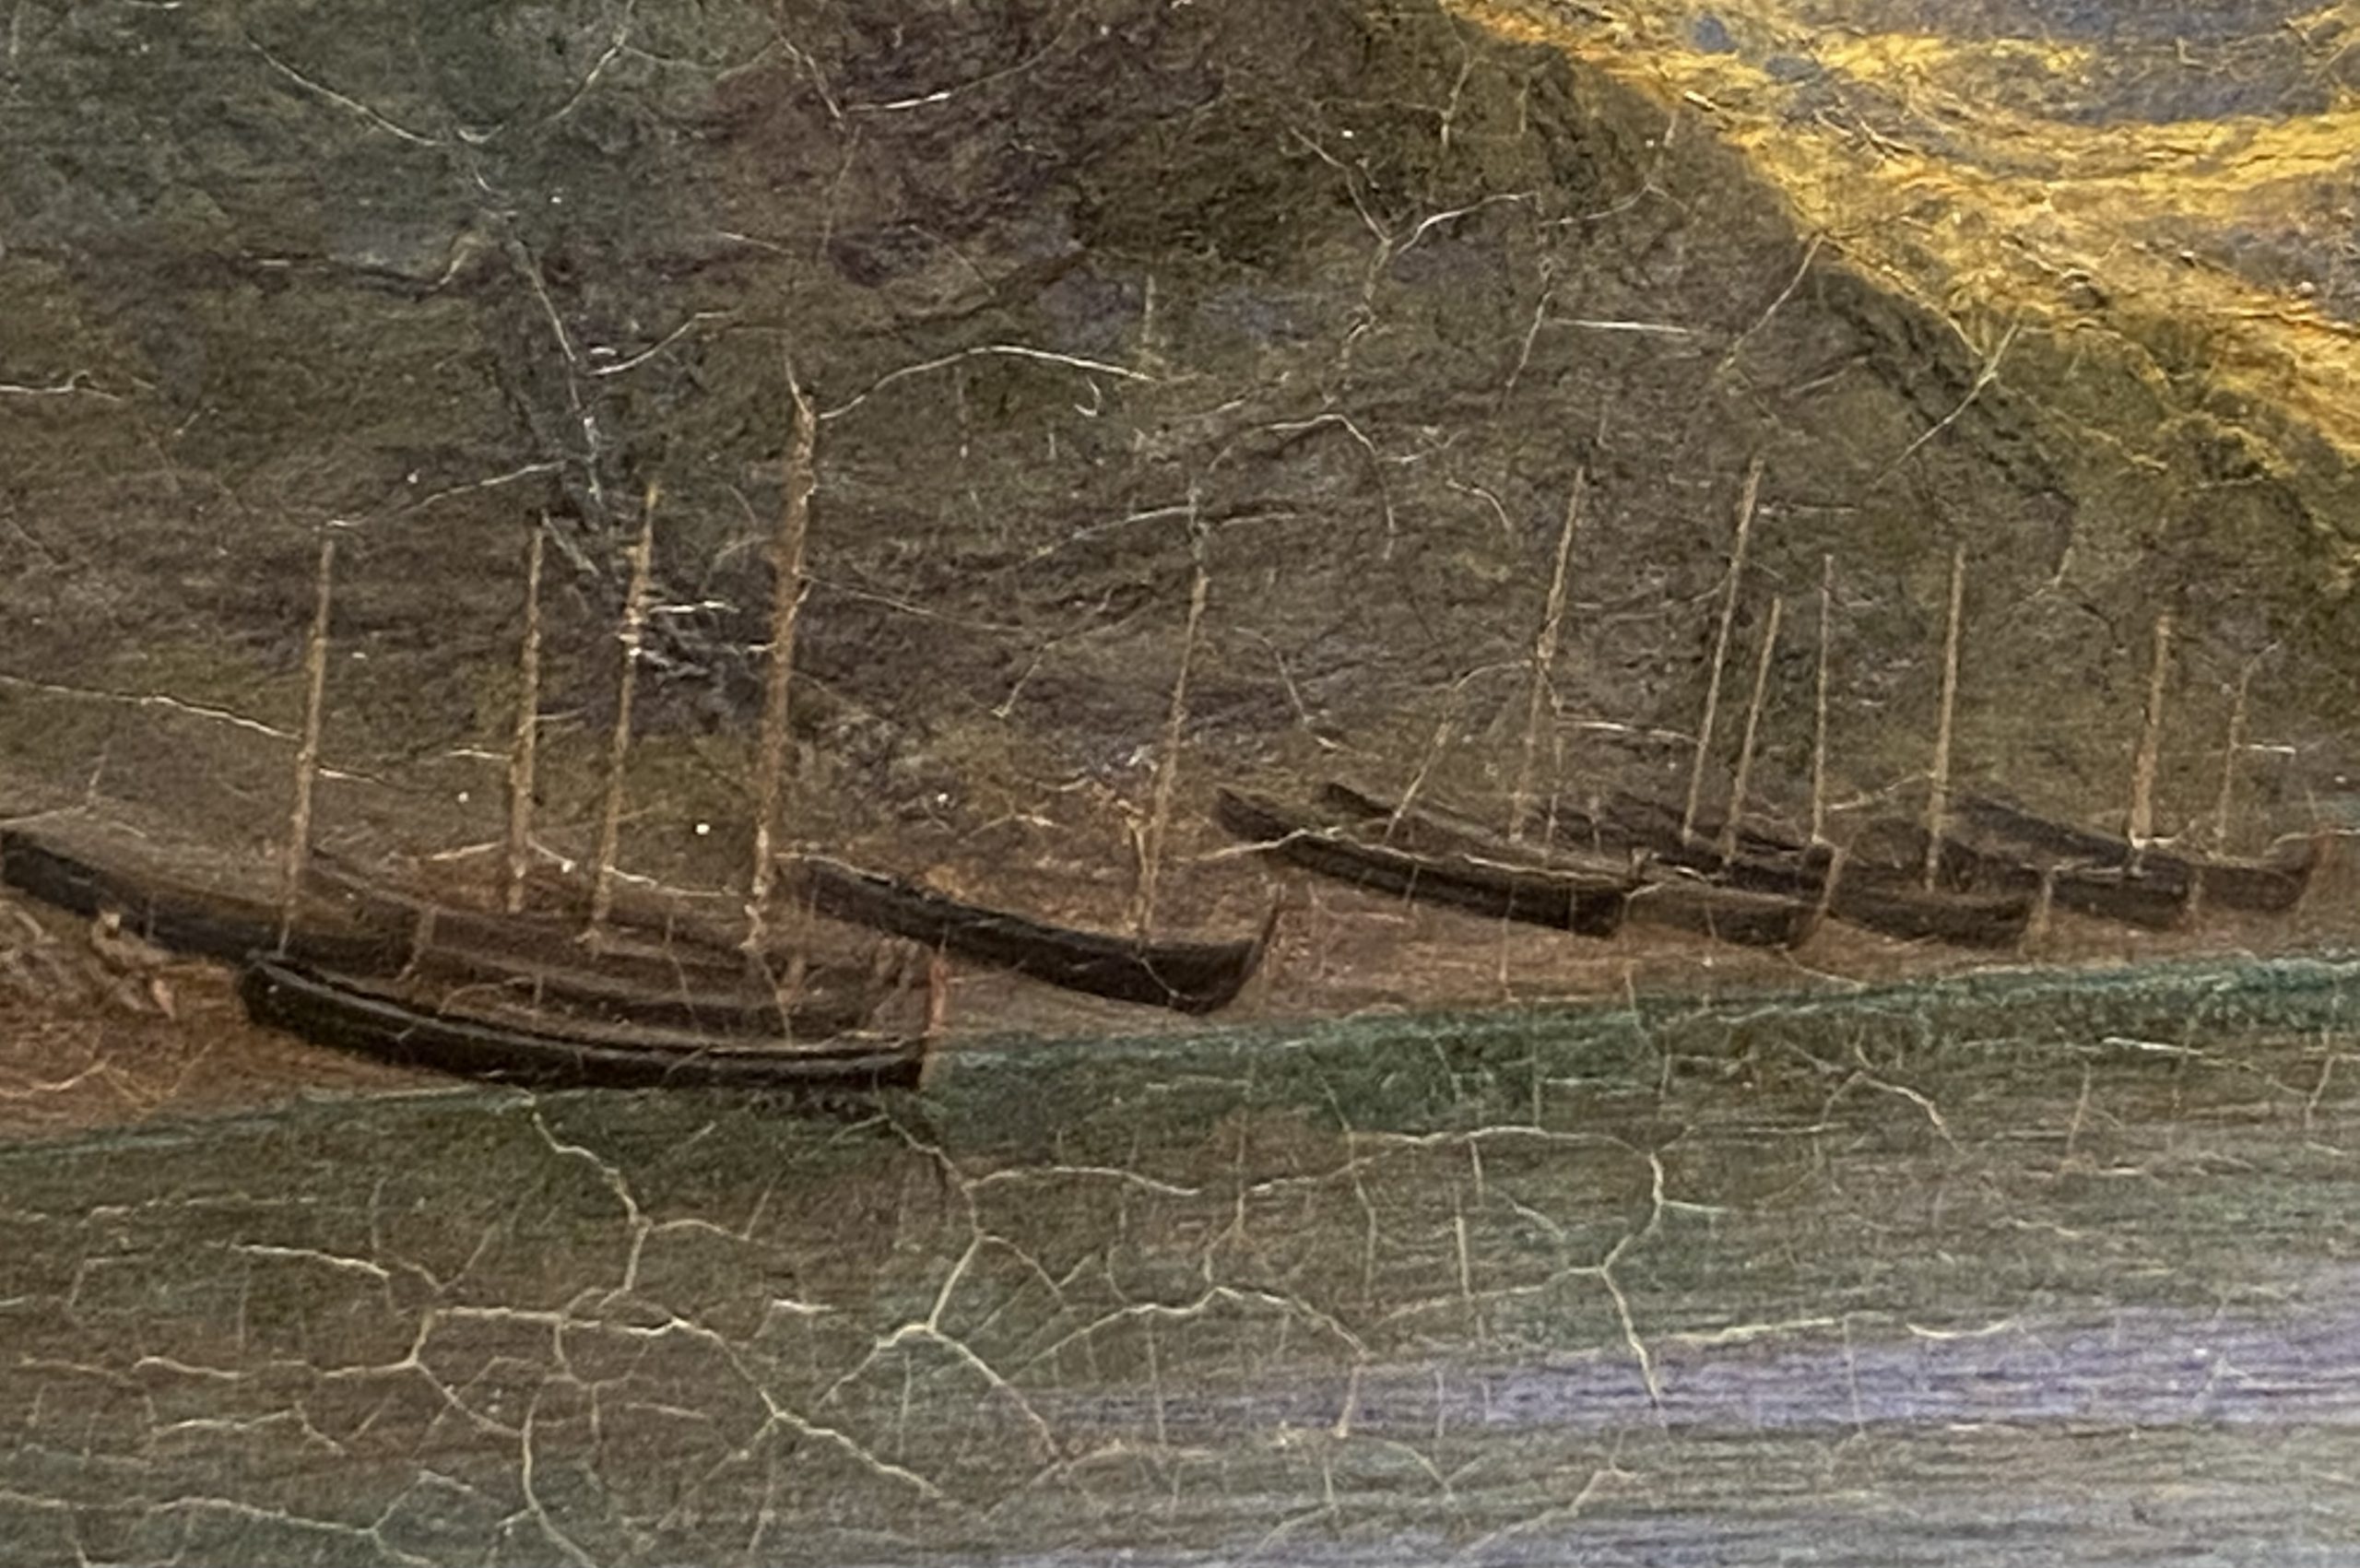 ナポリ湾のマッサ-ジョン・ブレット-イギリス-特別展【光影浮空-欧州絵画500年】-成都博物館